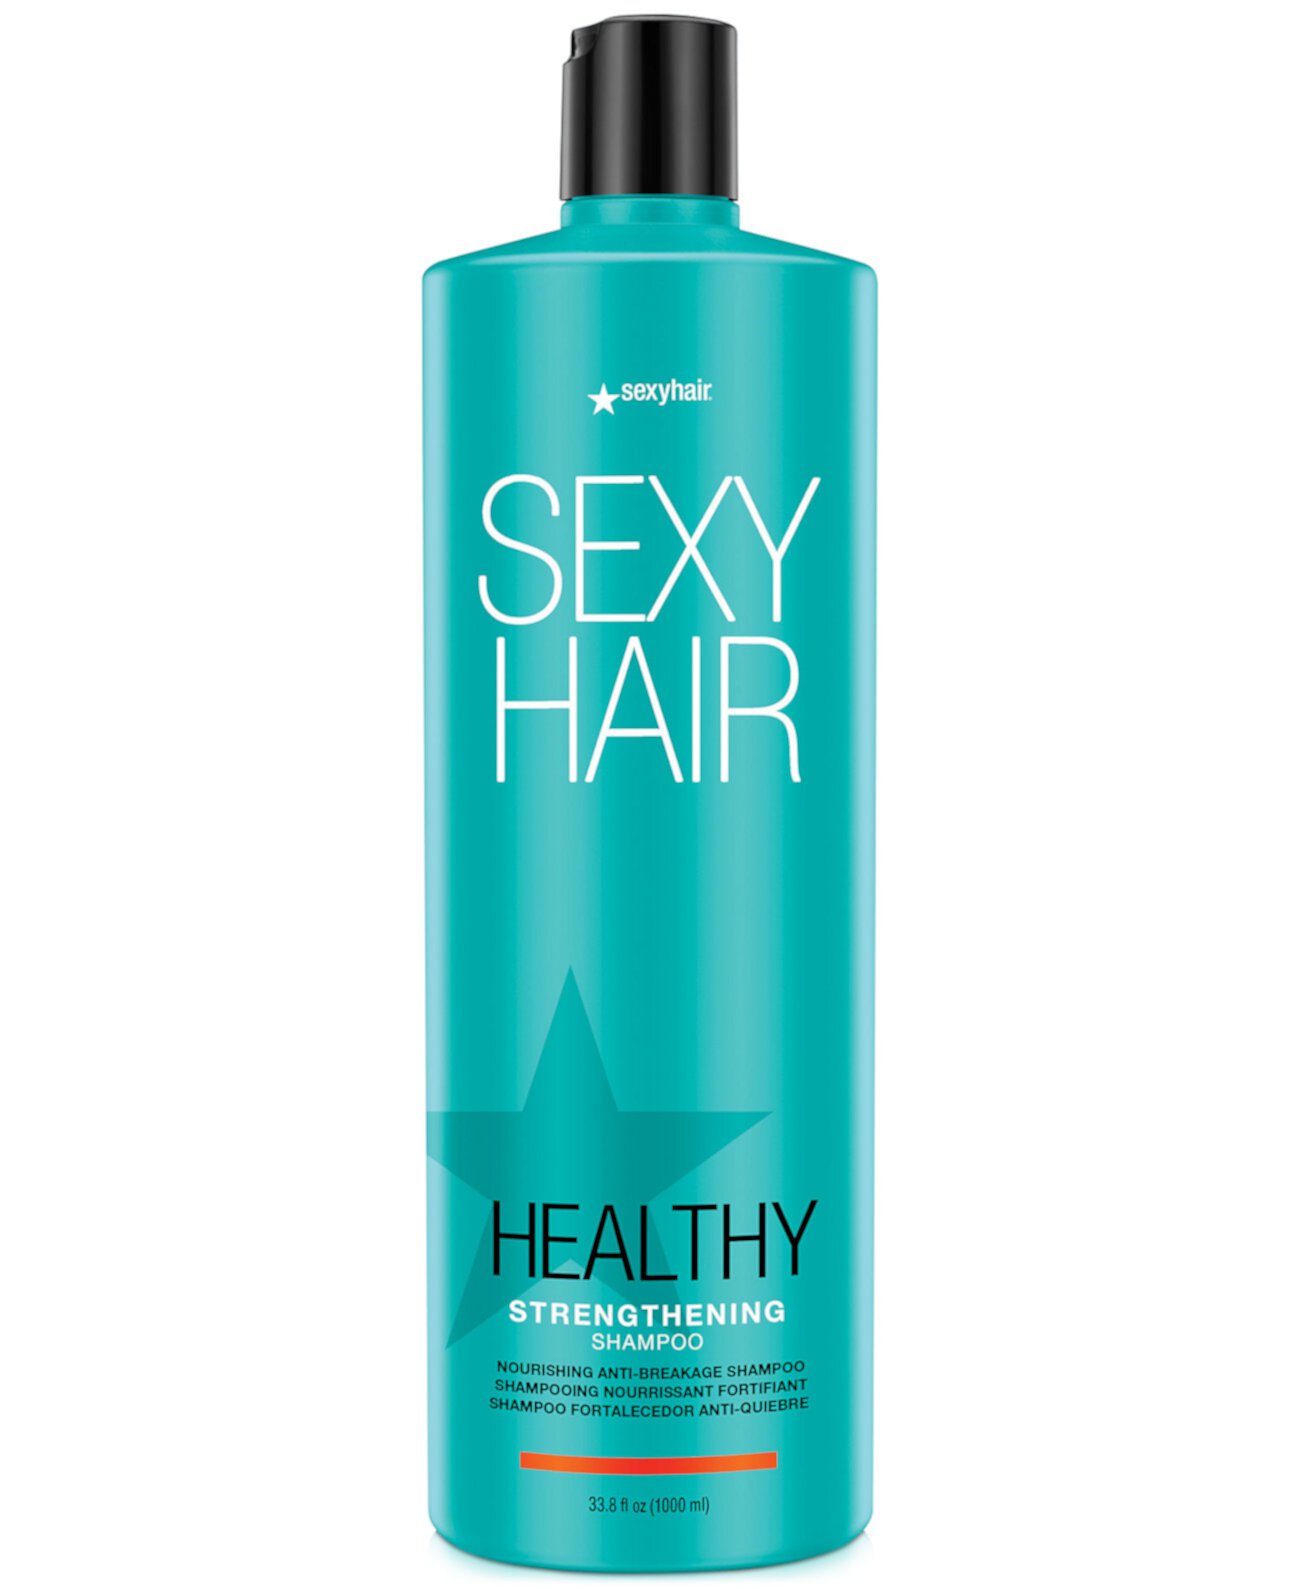 Шампунь для укрепления волос Strong Sexy Hair, 33,8 унции, от PUREBEAUTY Salon & Spa Sexy Hair